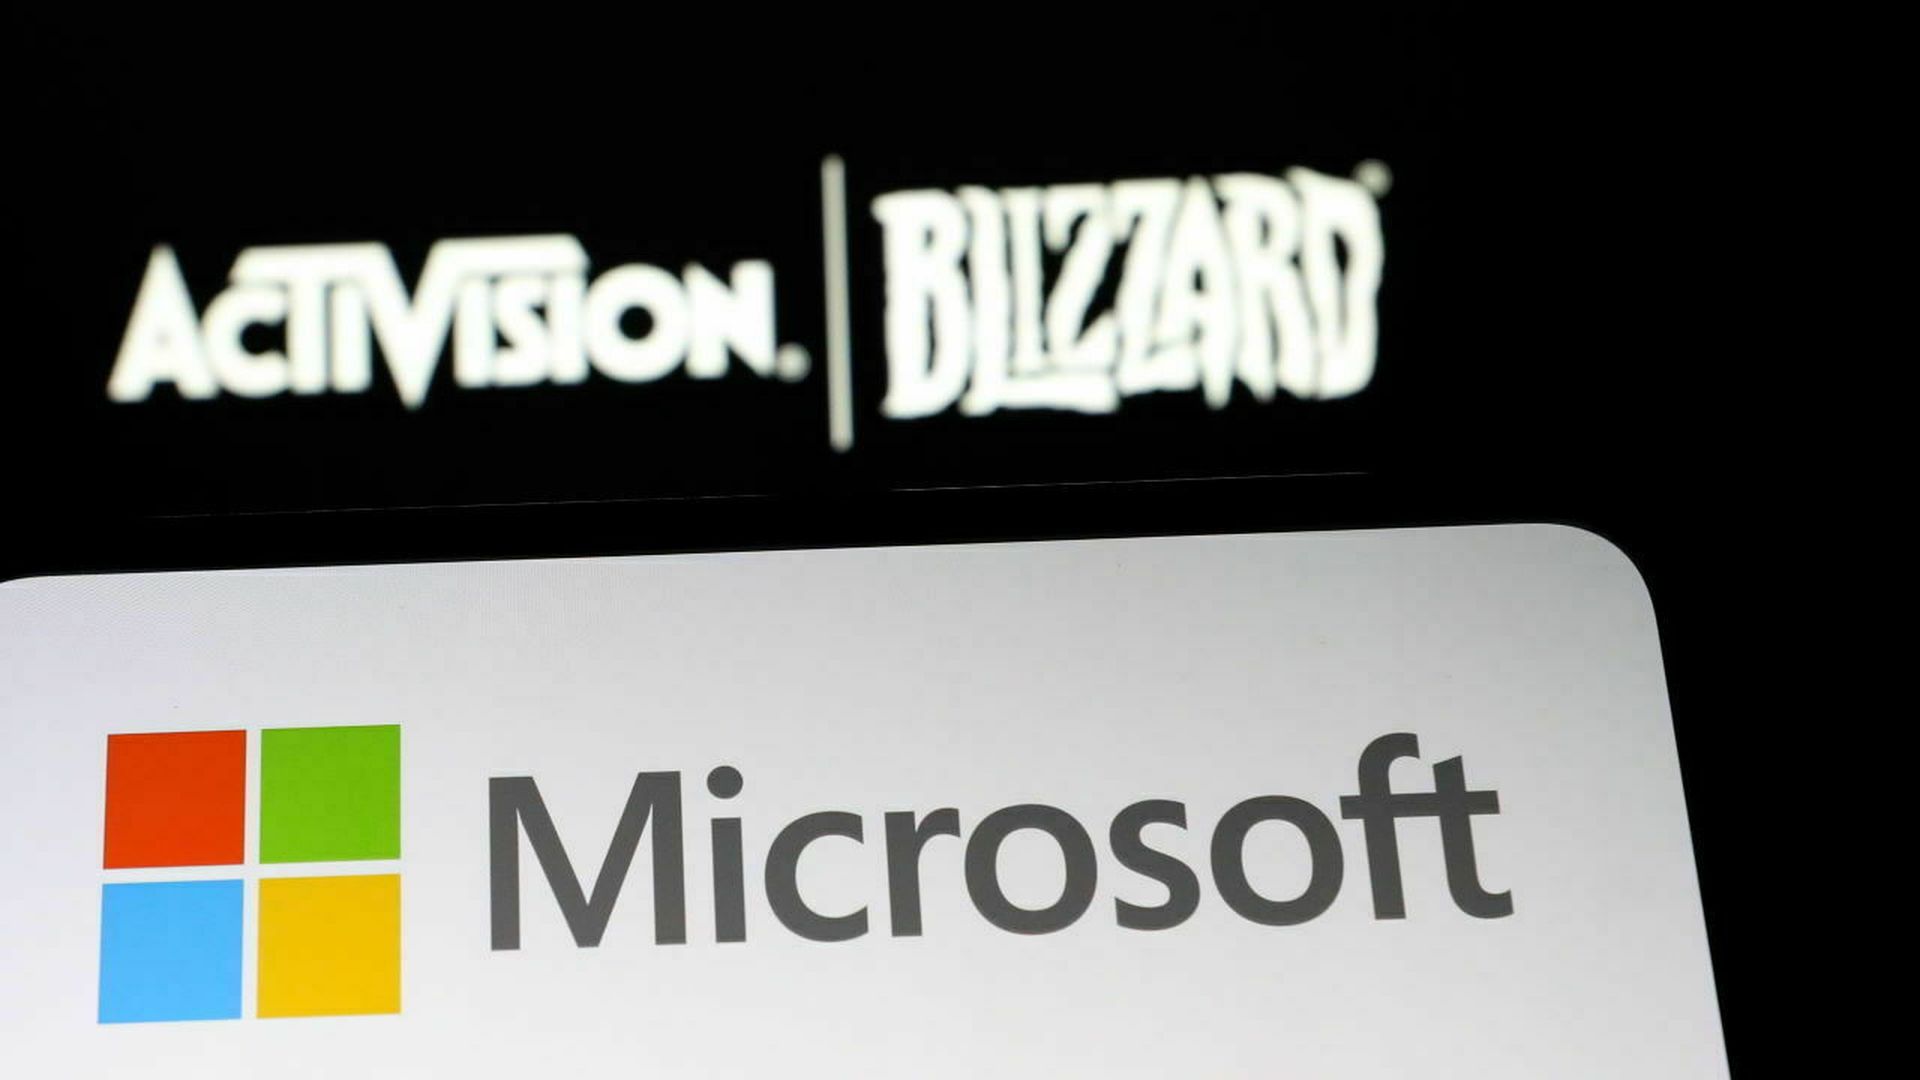 Das Problem von FTC Microsoft Activision Blizzard könnte sich zu einer Klage entwickeln